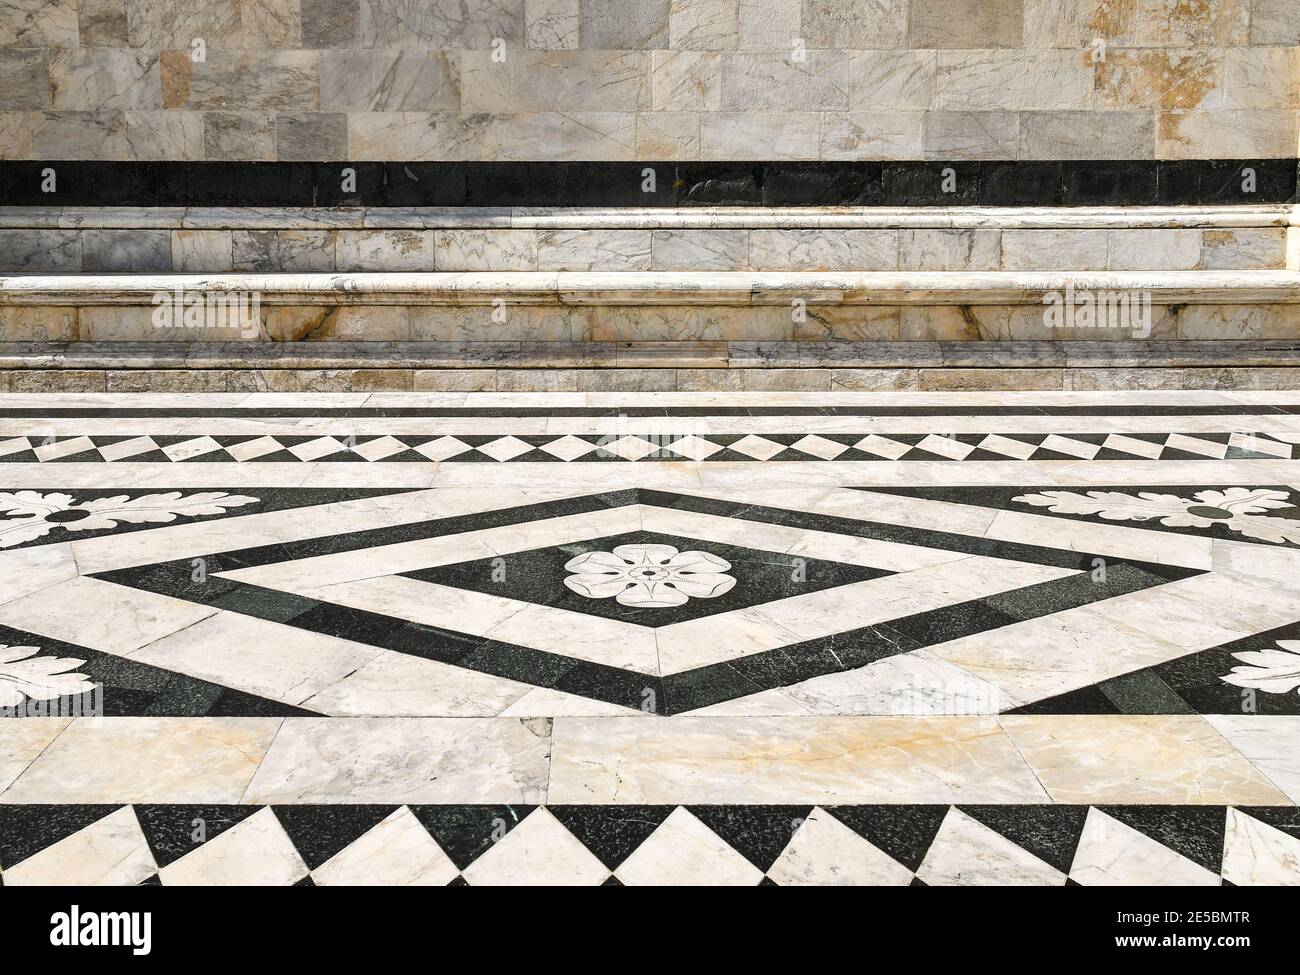 Détail du revêtement extérieur en marbre de la cathédrale de Sienne avec une décoration géométrique en noir et blanc, Sienne, Toscane, Italie Banque D'Images